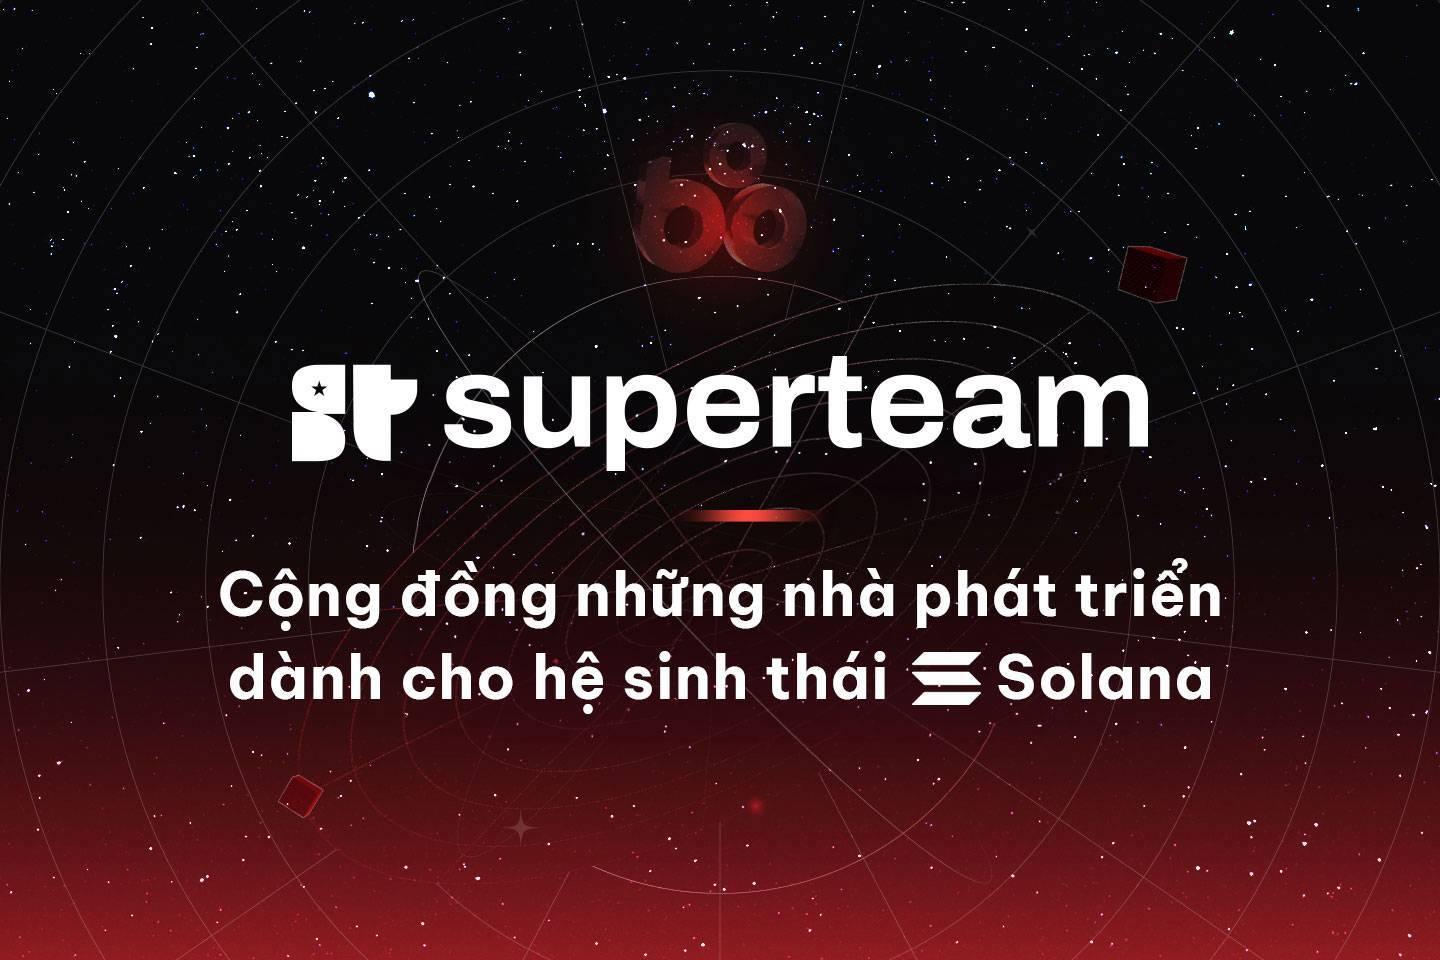 superteam-cong-dong-nhung-nha-phat-trien-danh-cho-he-sinh-thai-solana